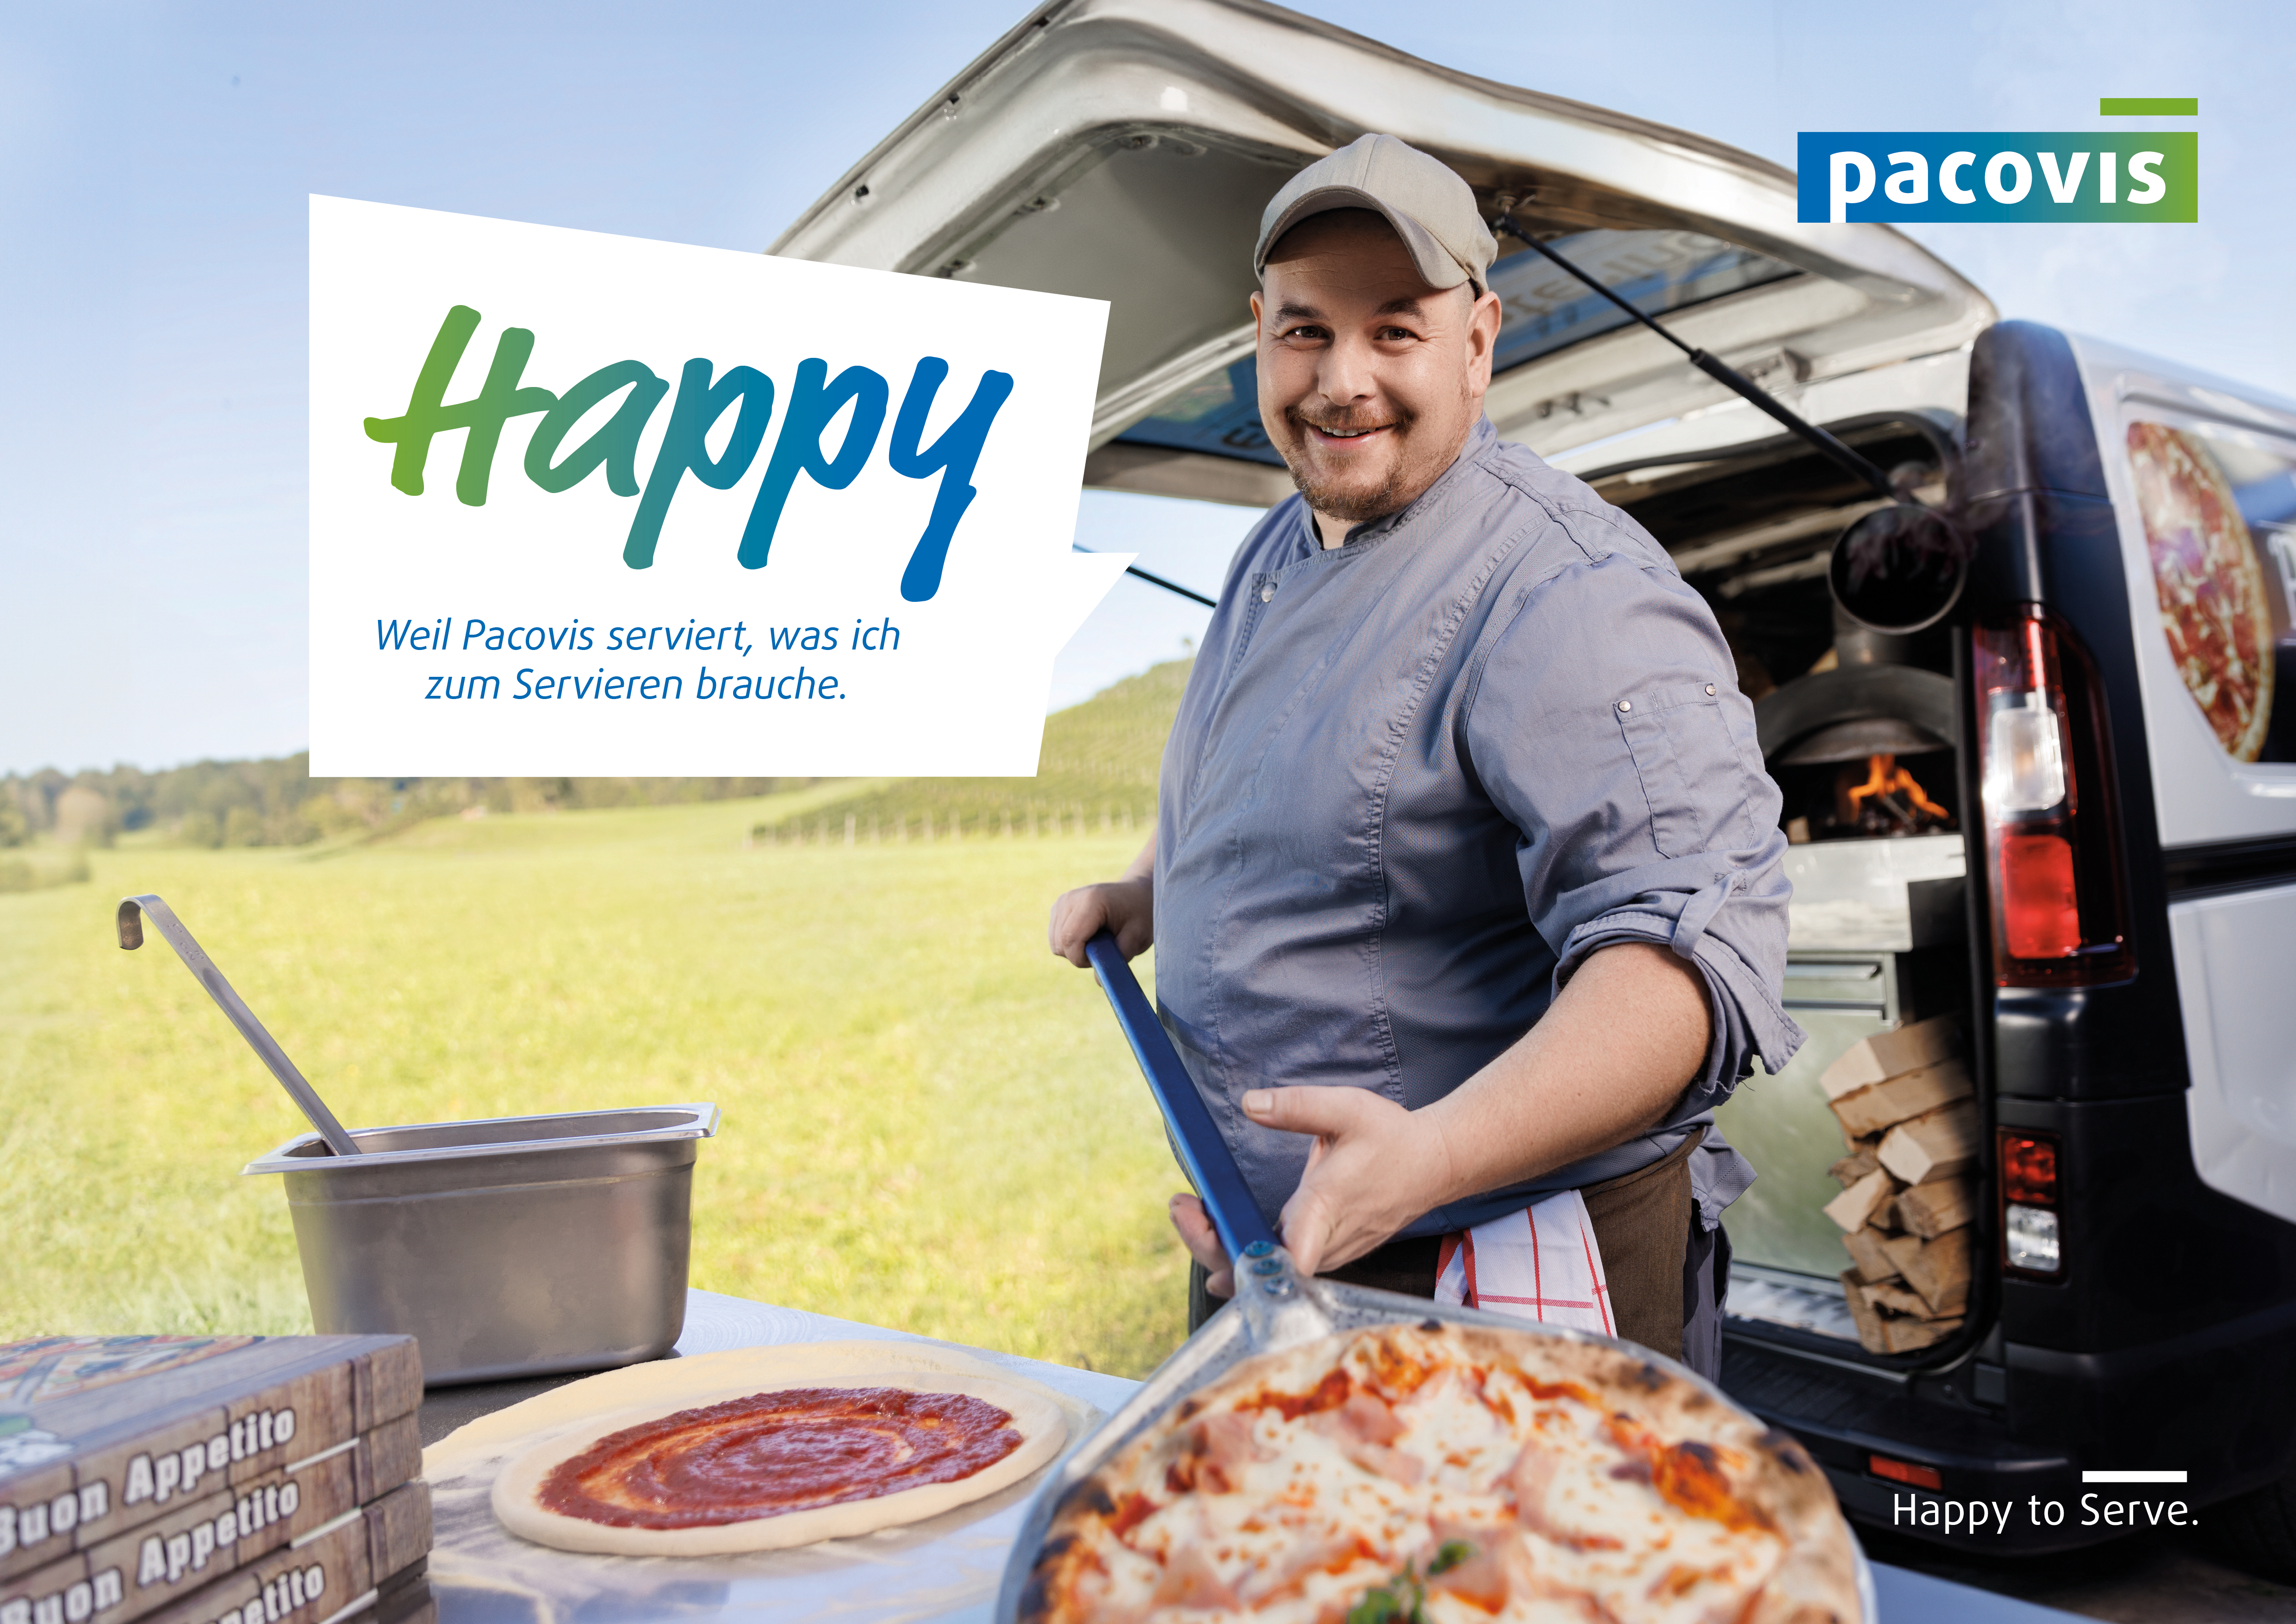 Bild aus der Pacovis-Imagekampagne mit glücklichem Party-Service-Besitzer und Text "Happy, weil Pacovis serviert, was ich zum Servieren brauche."